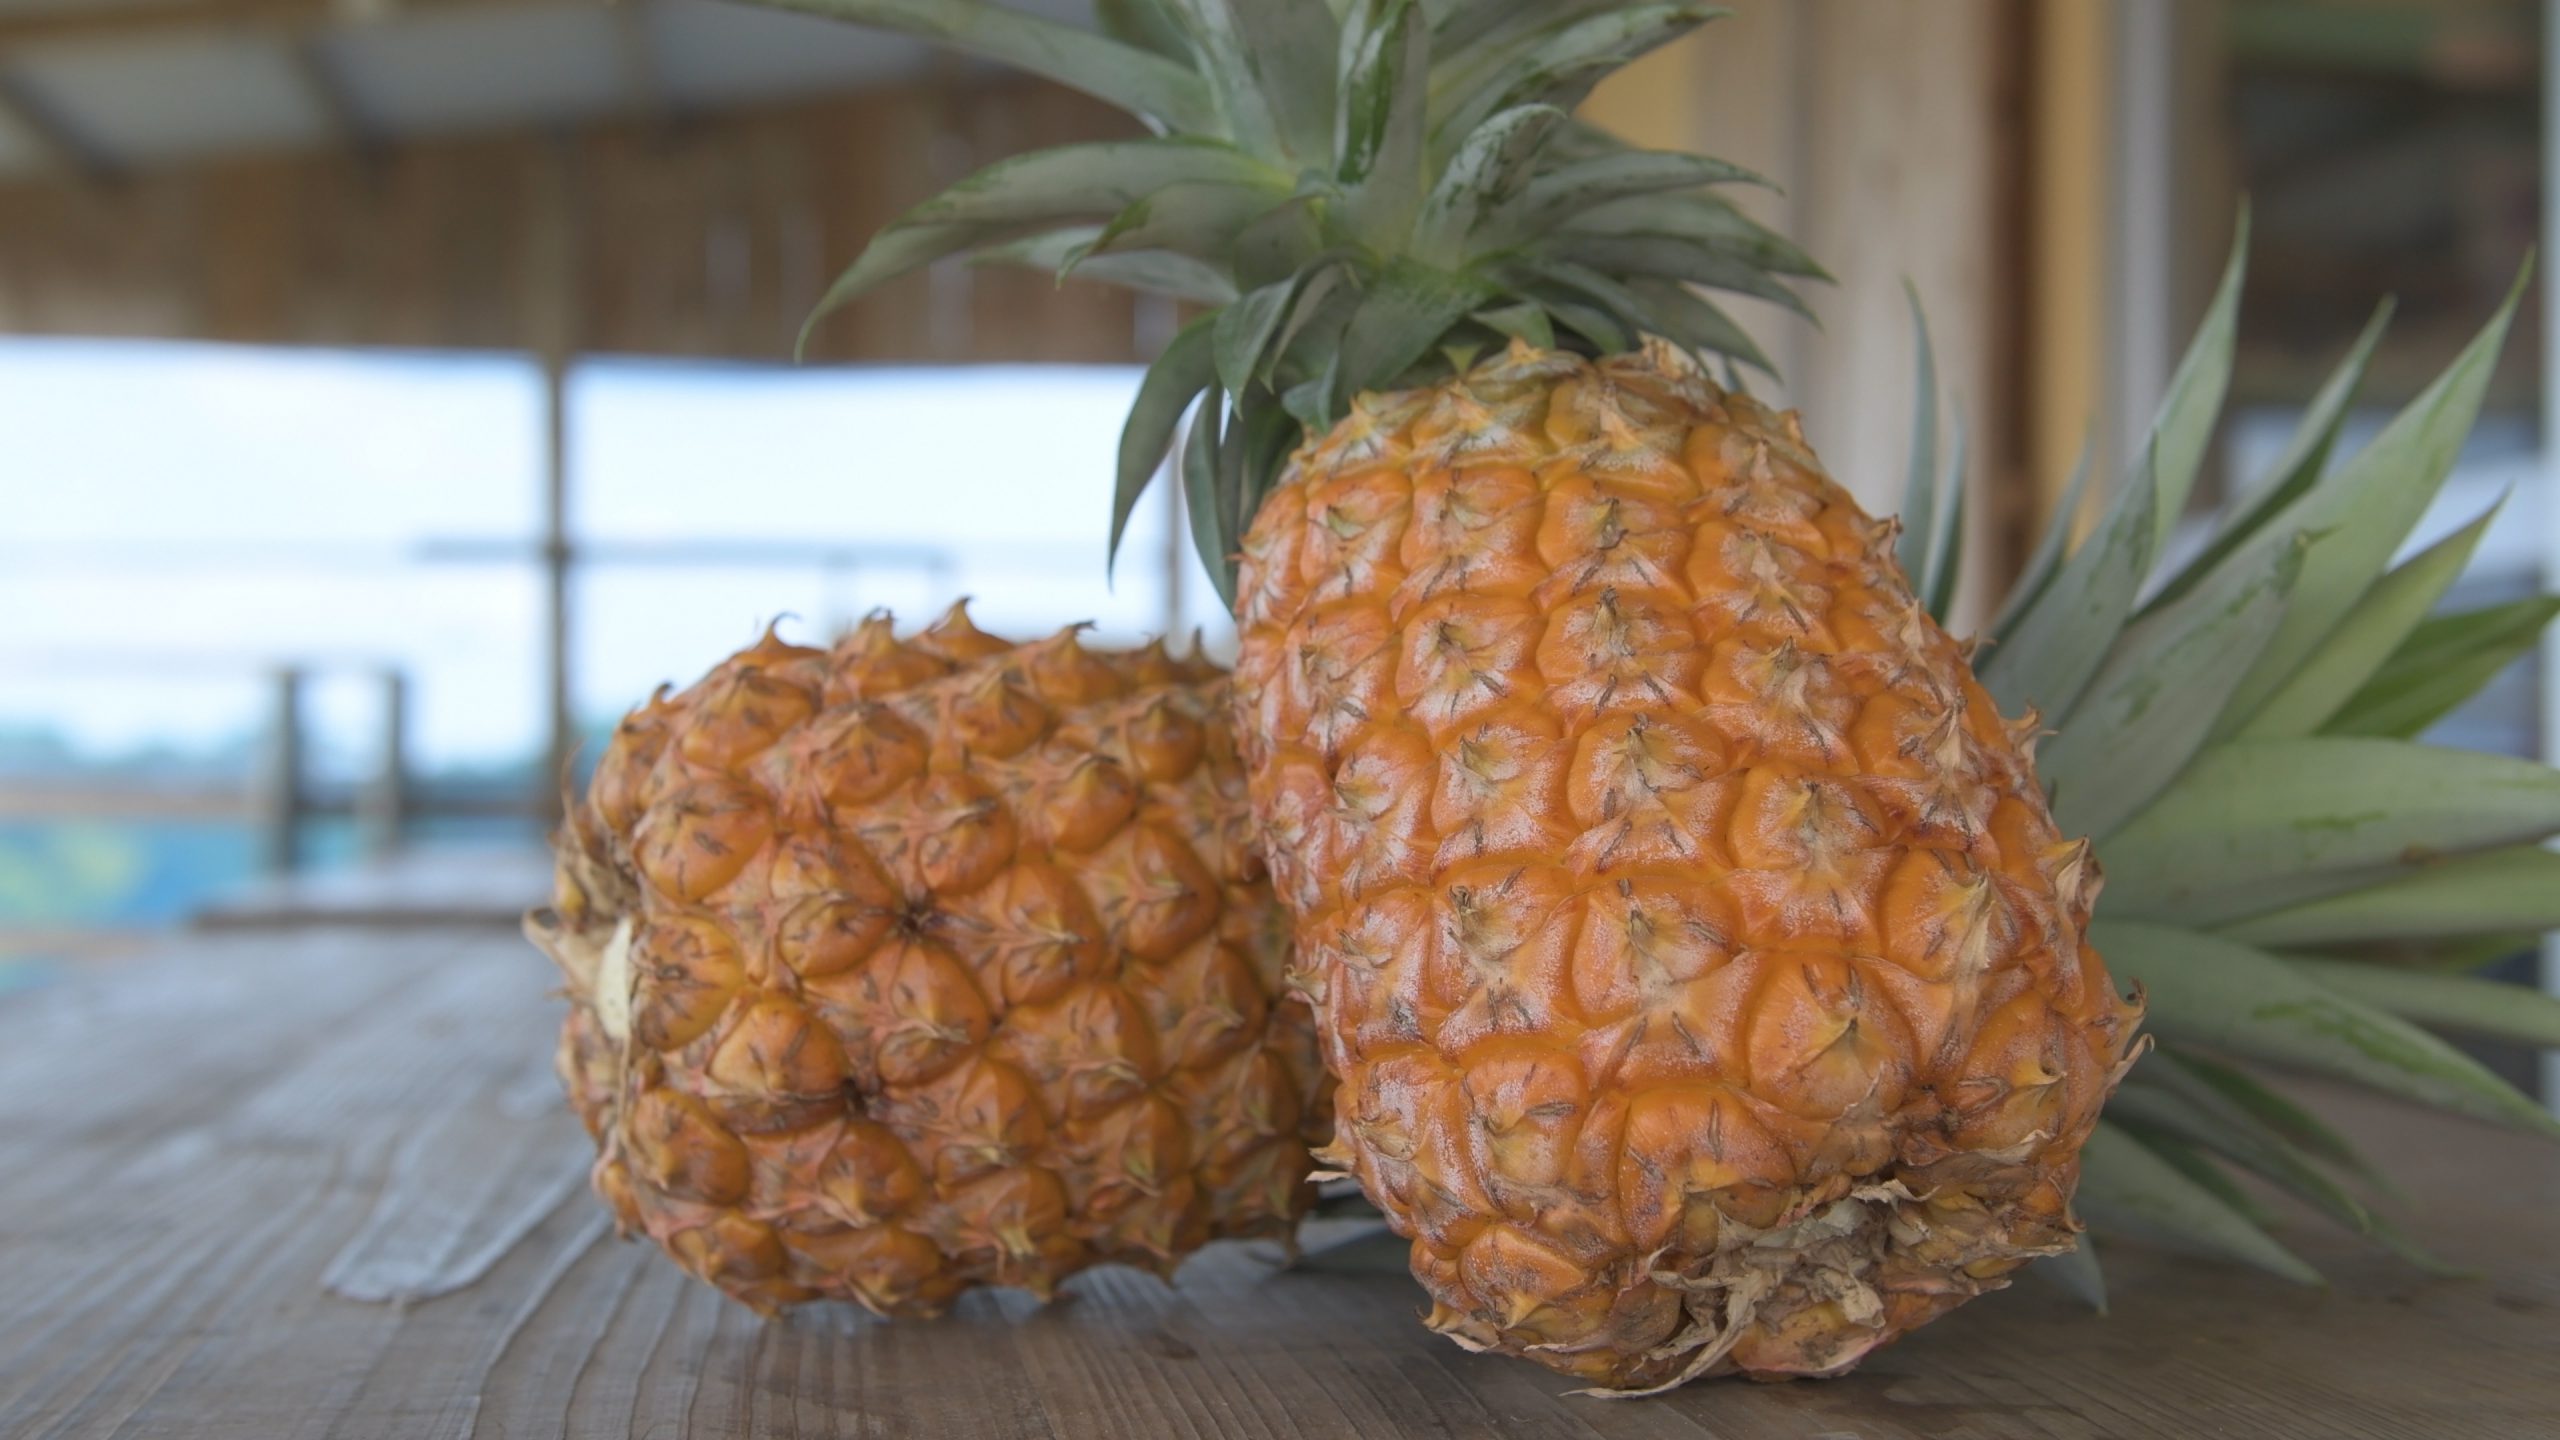 沖縄のパイナップル 国産のほとんどが沖縄産 食べ頃や品種などを紹介 オリオンストーリー